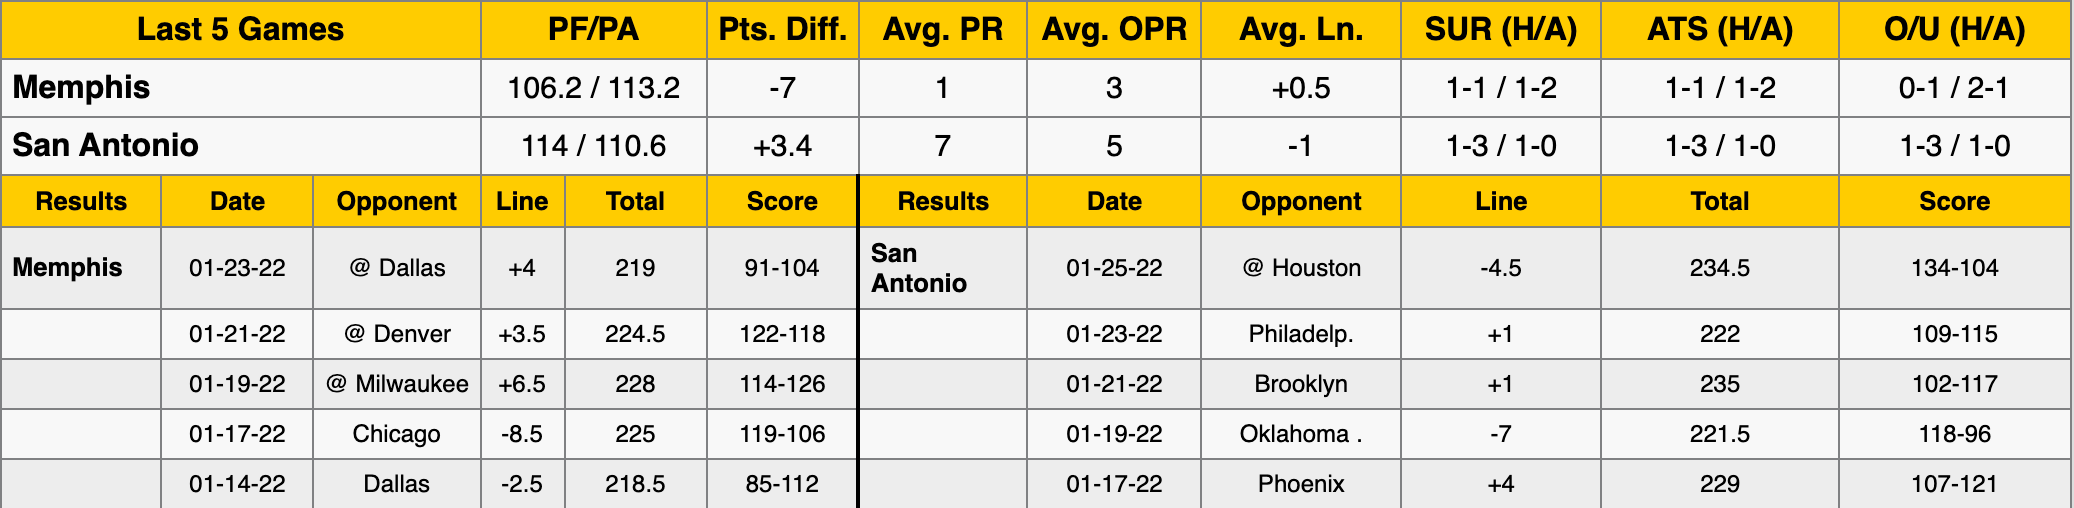 Memphis Grizzlies vs San Antonio Spurs Stats